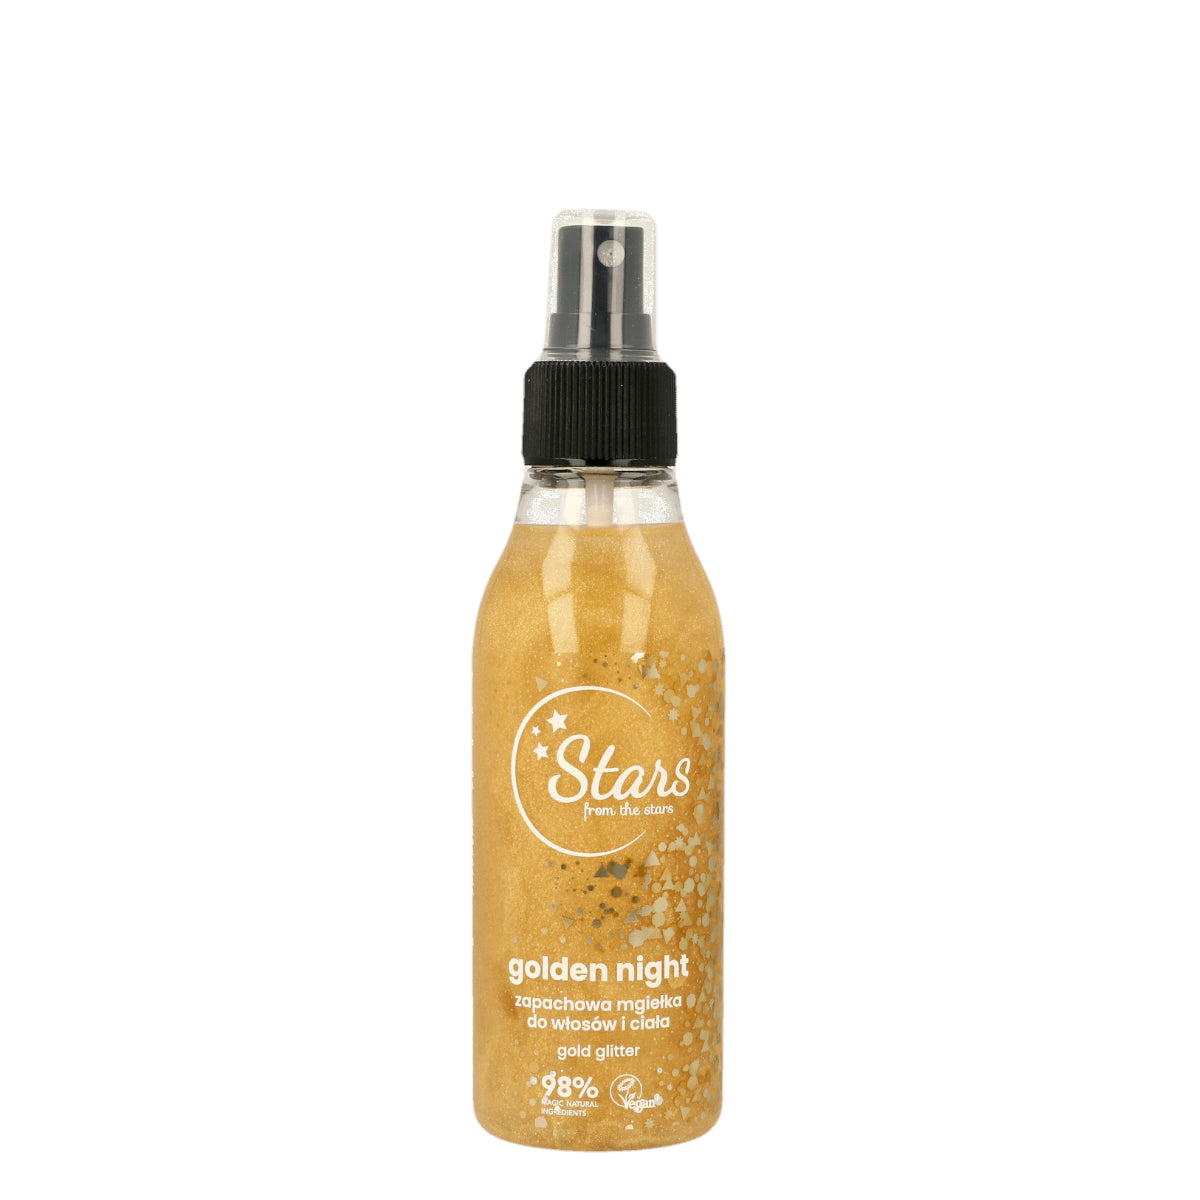 Stars Golden Night Hair & Body Fragrance Mist